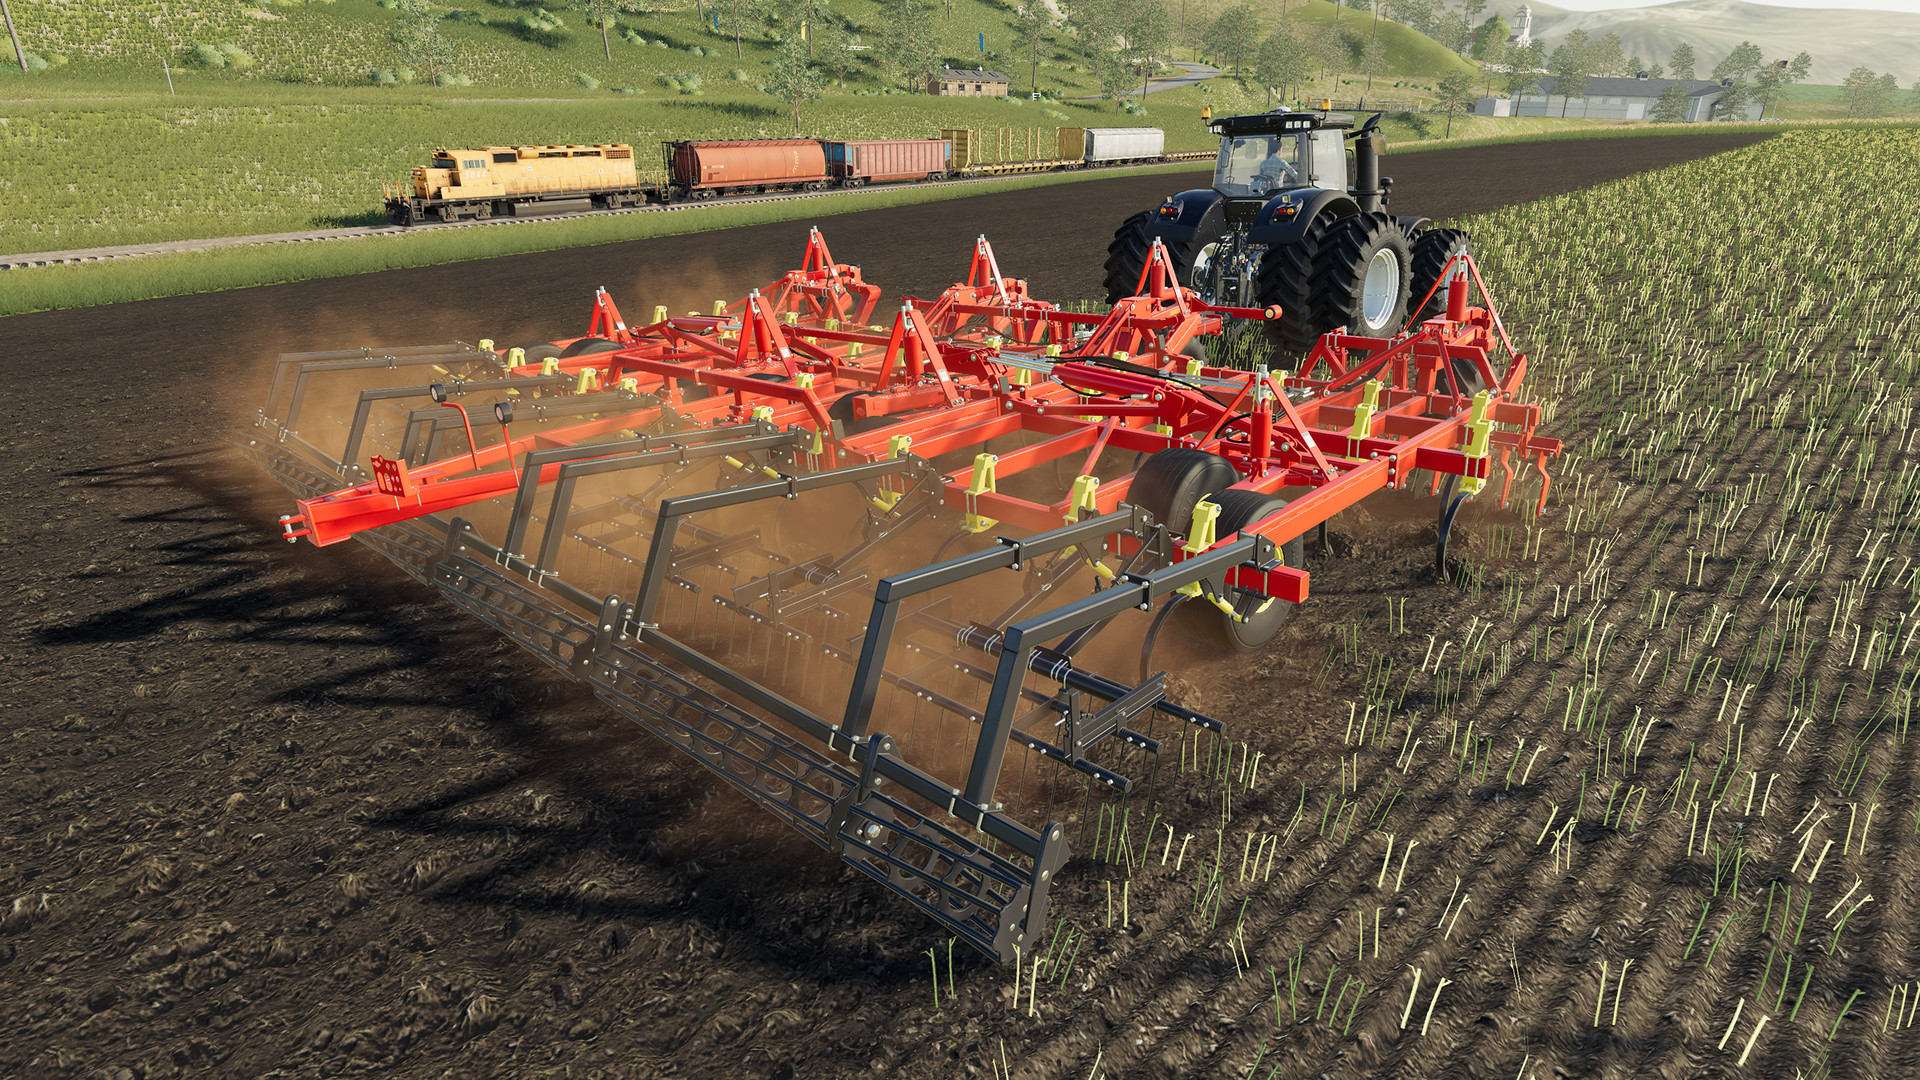 Farming Simulator 20 : De nouveaux équipements Bourgault sont